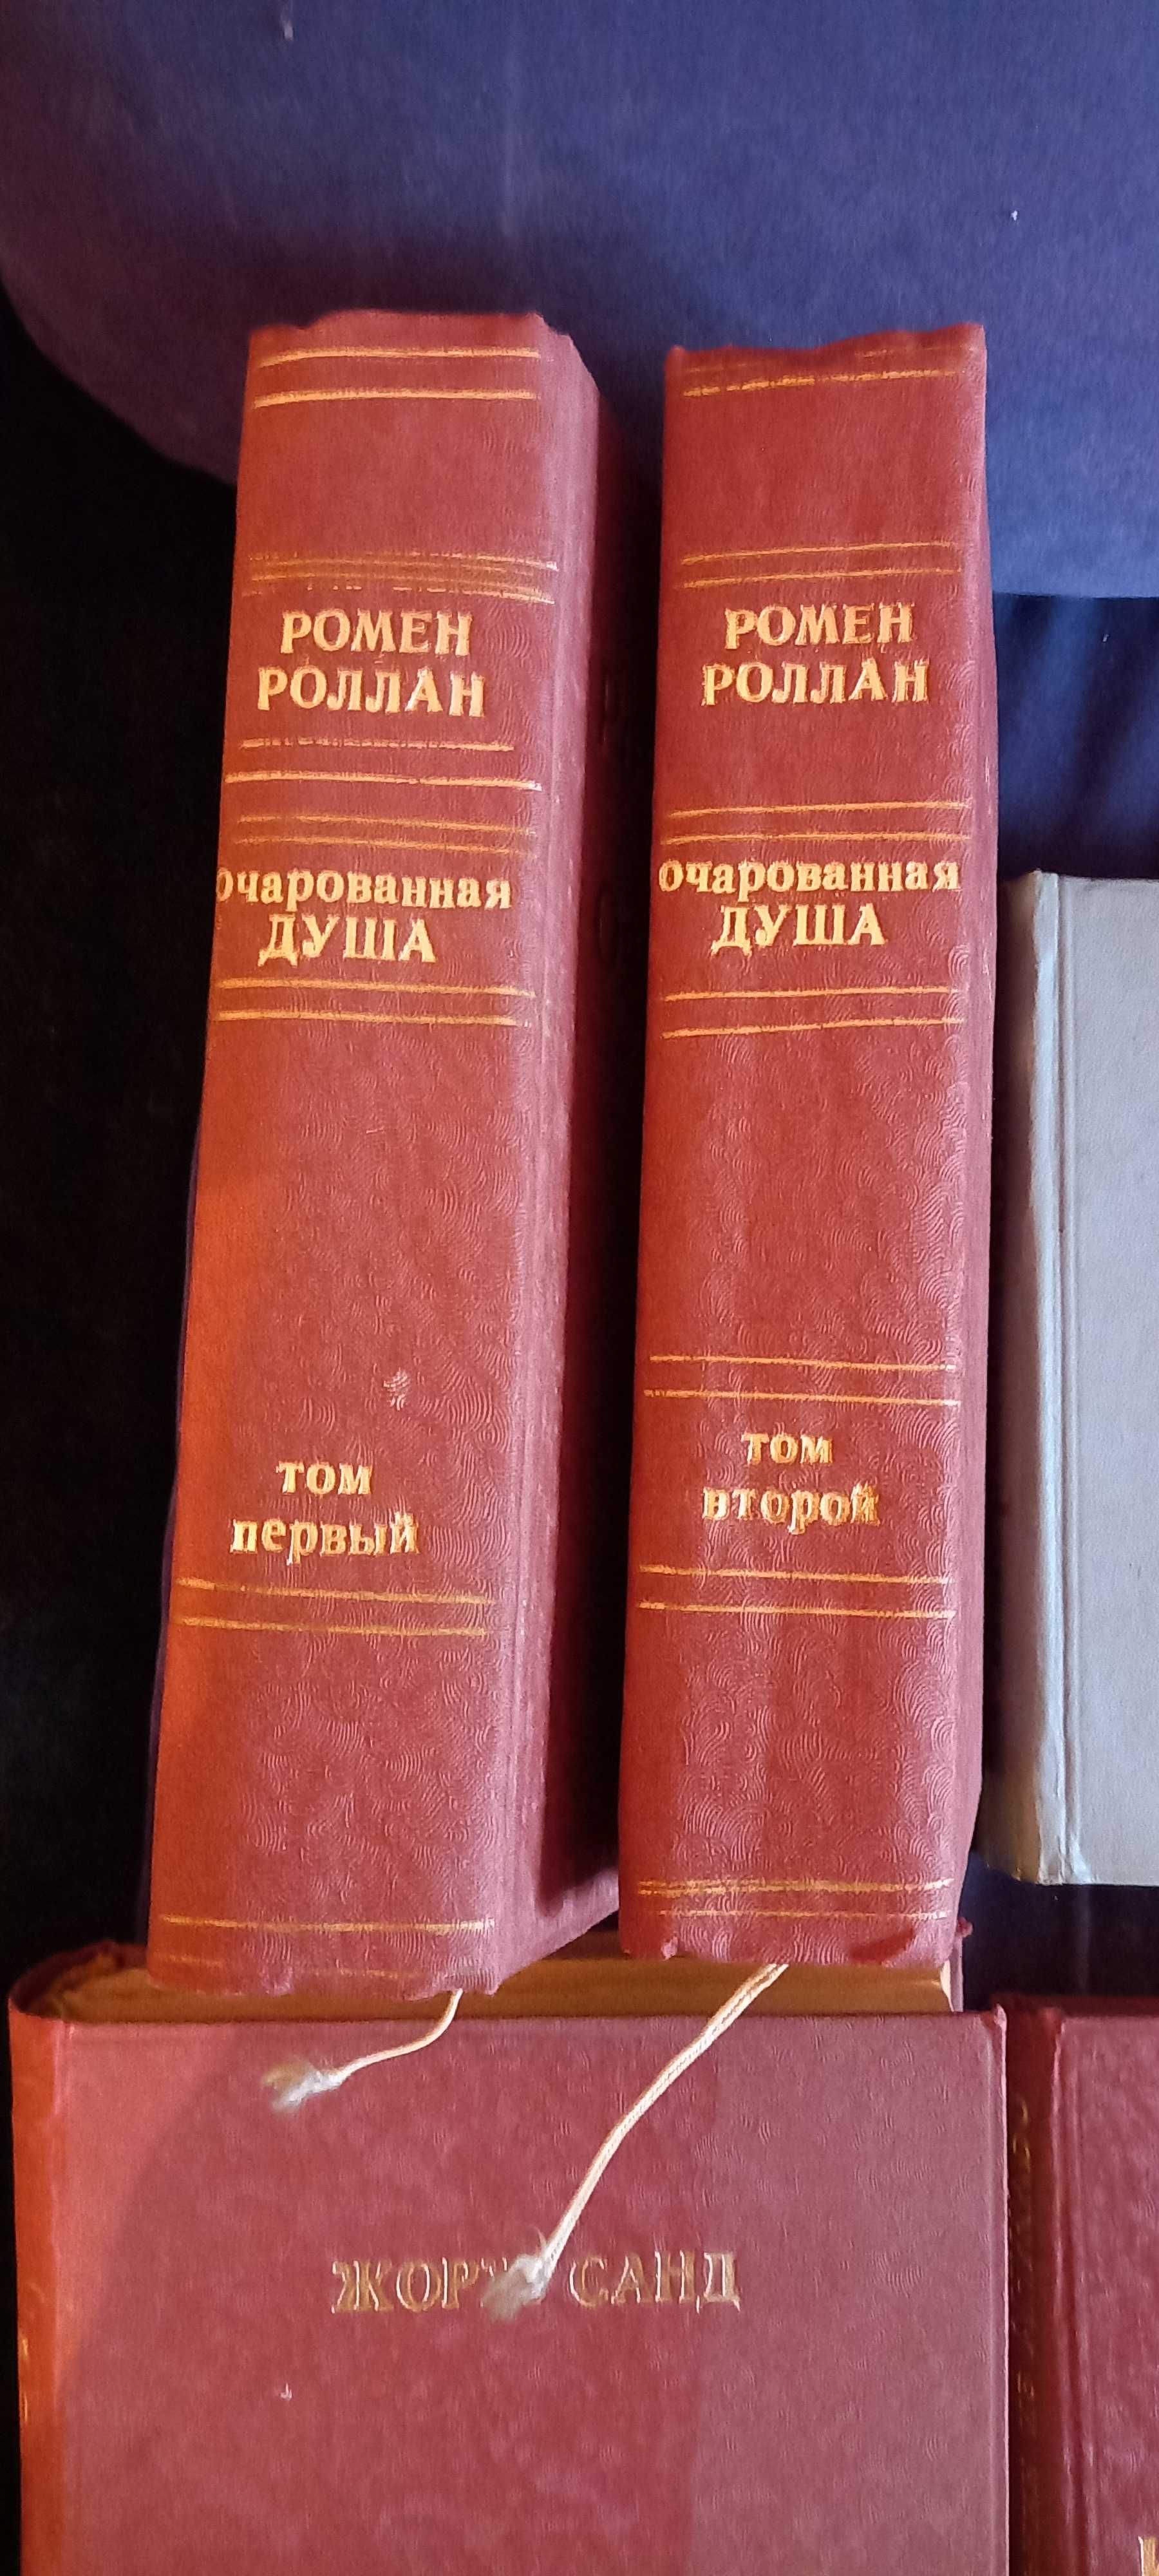 Продам книги Ромен Ролан " Очарованная душа "  2 тома.